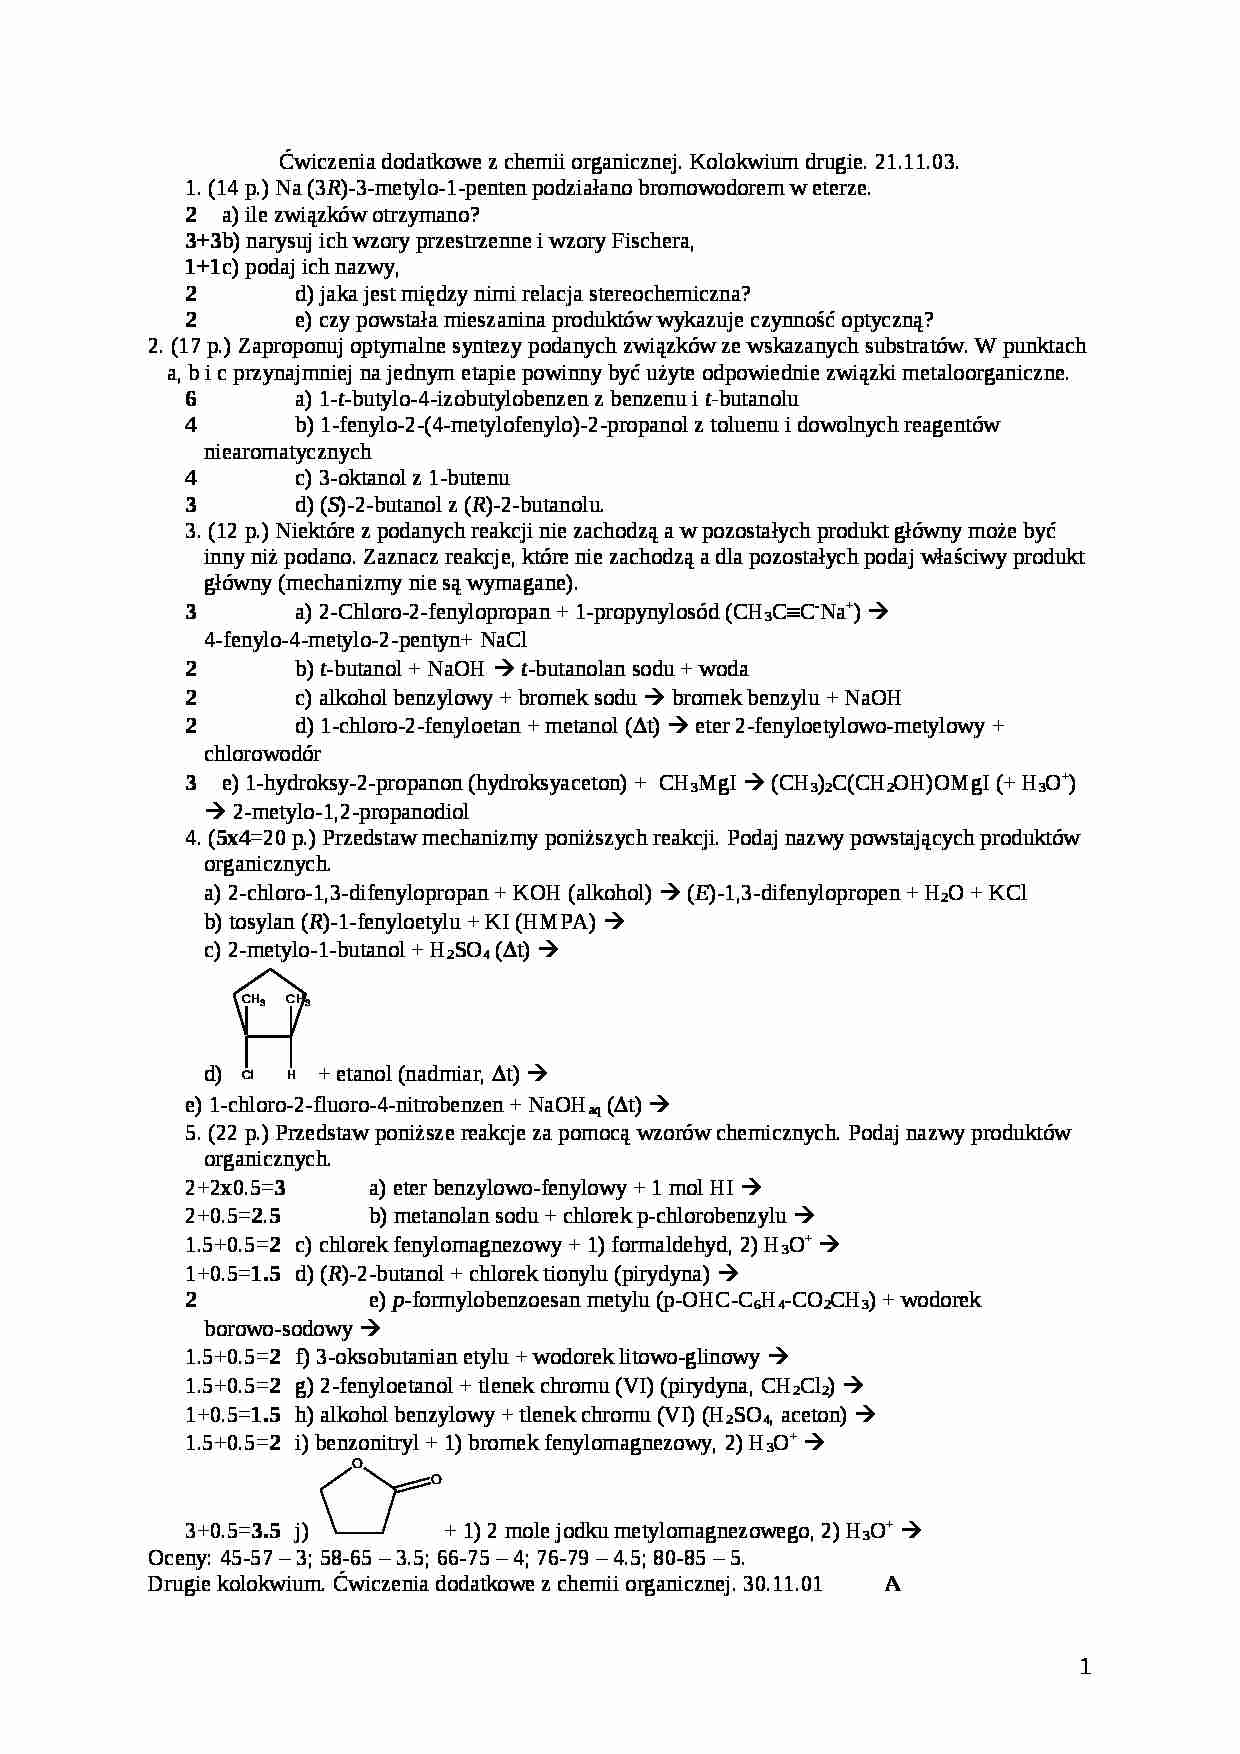 Chemia organiczna - kolokwium - alkohol - strona 1